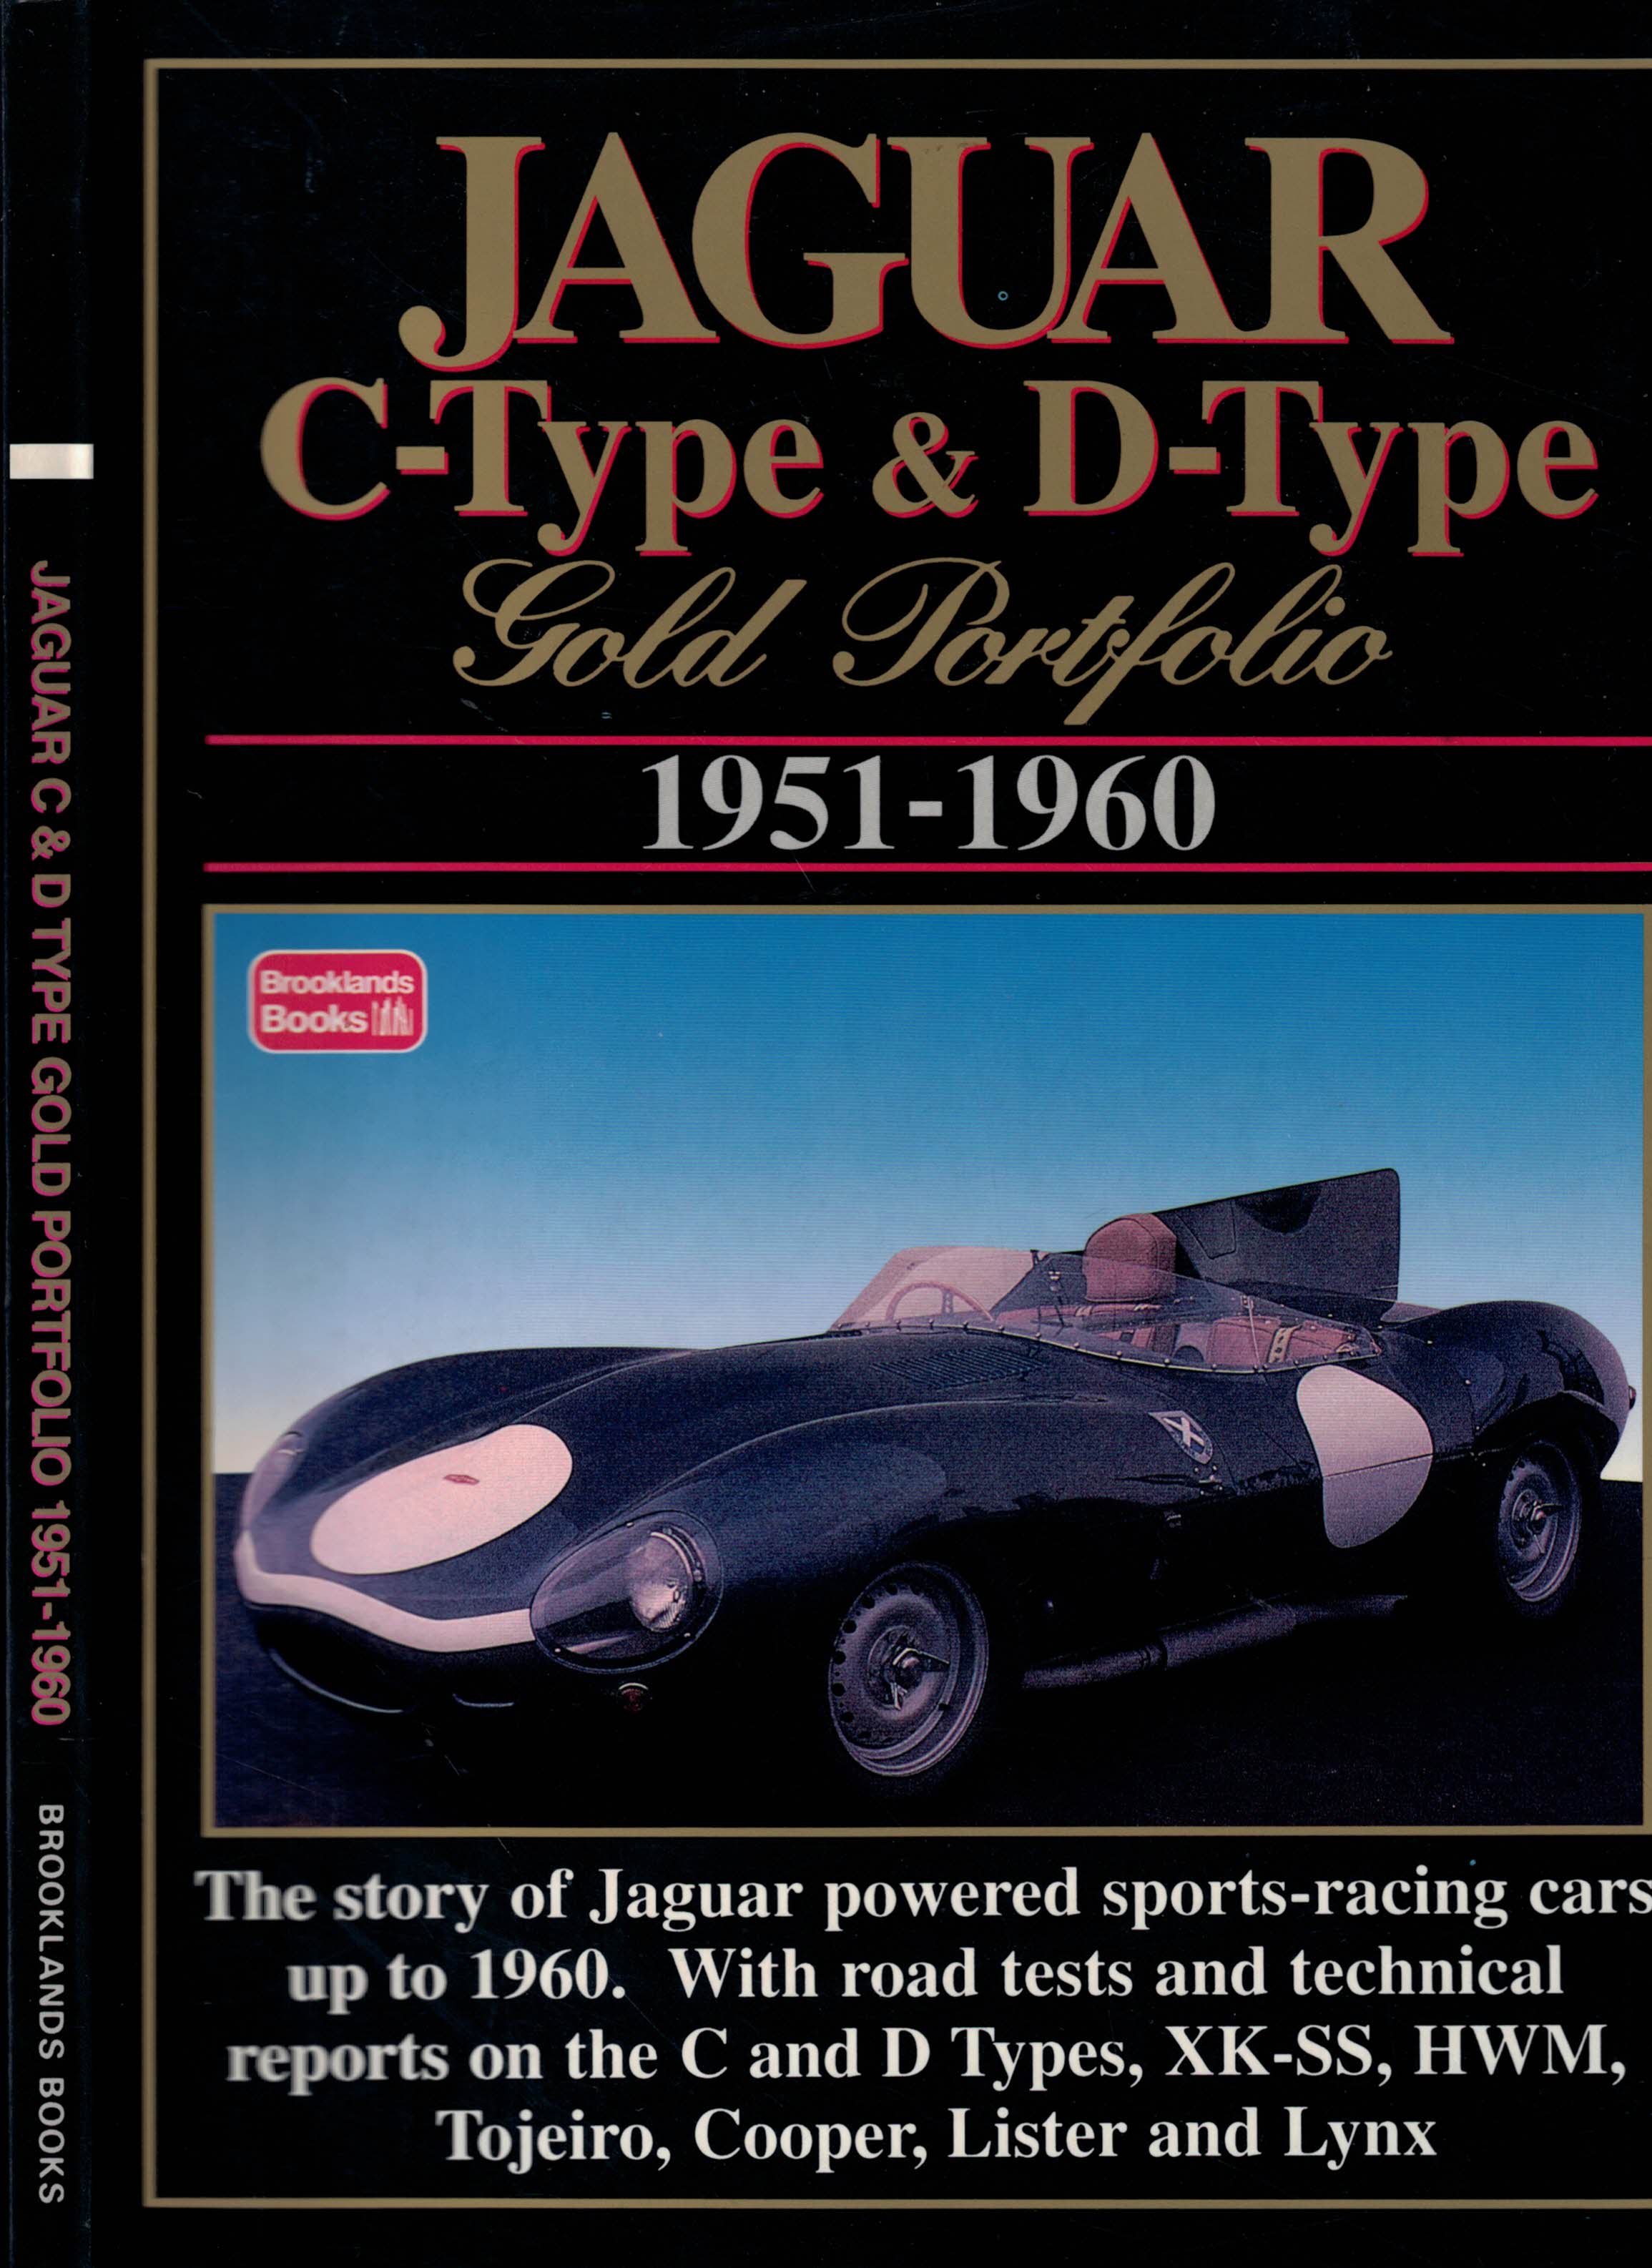 Jaguar C-Type & D-Type Gold Portfolio. 1951-1960.